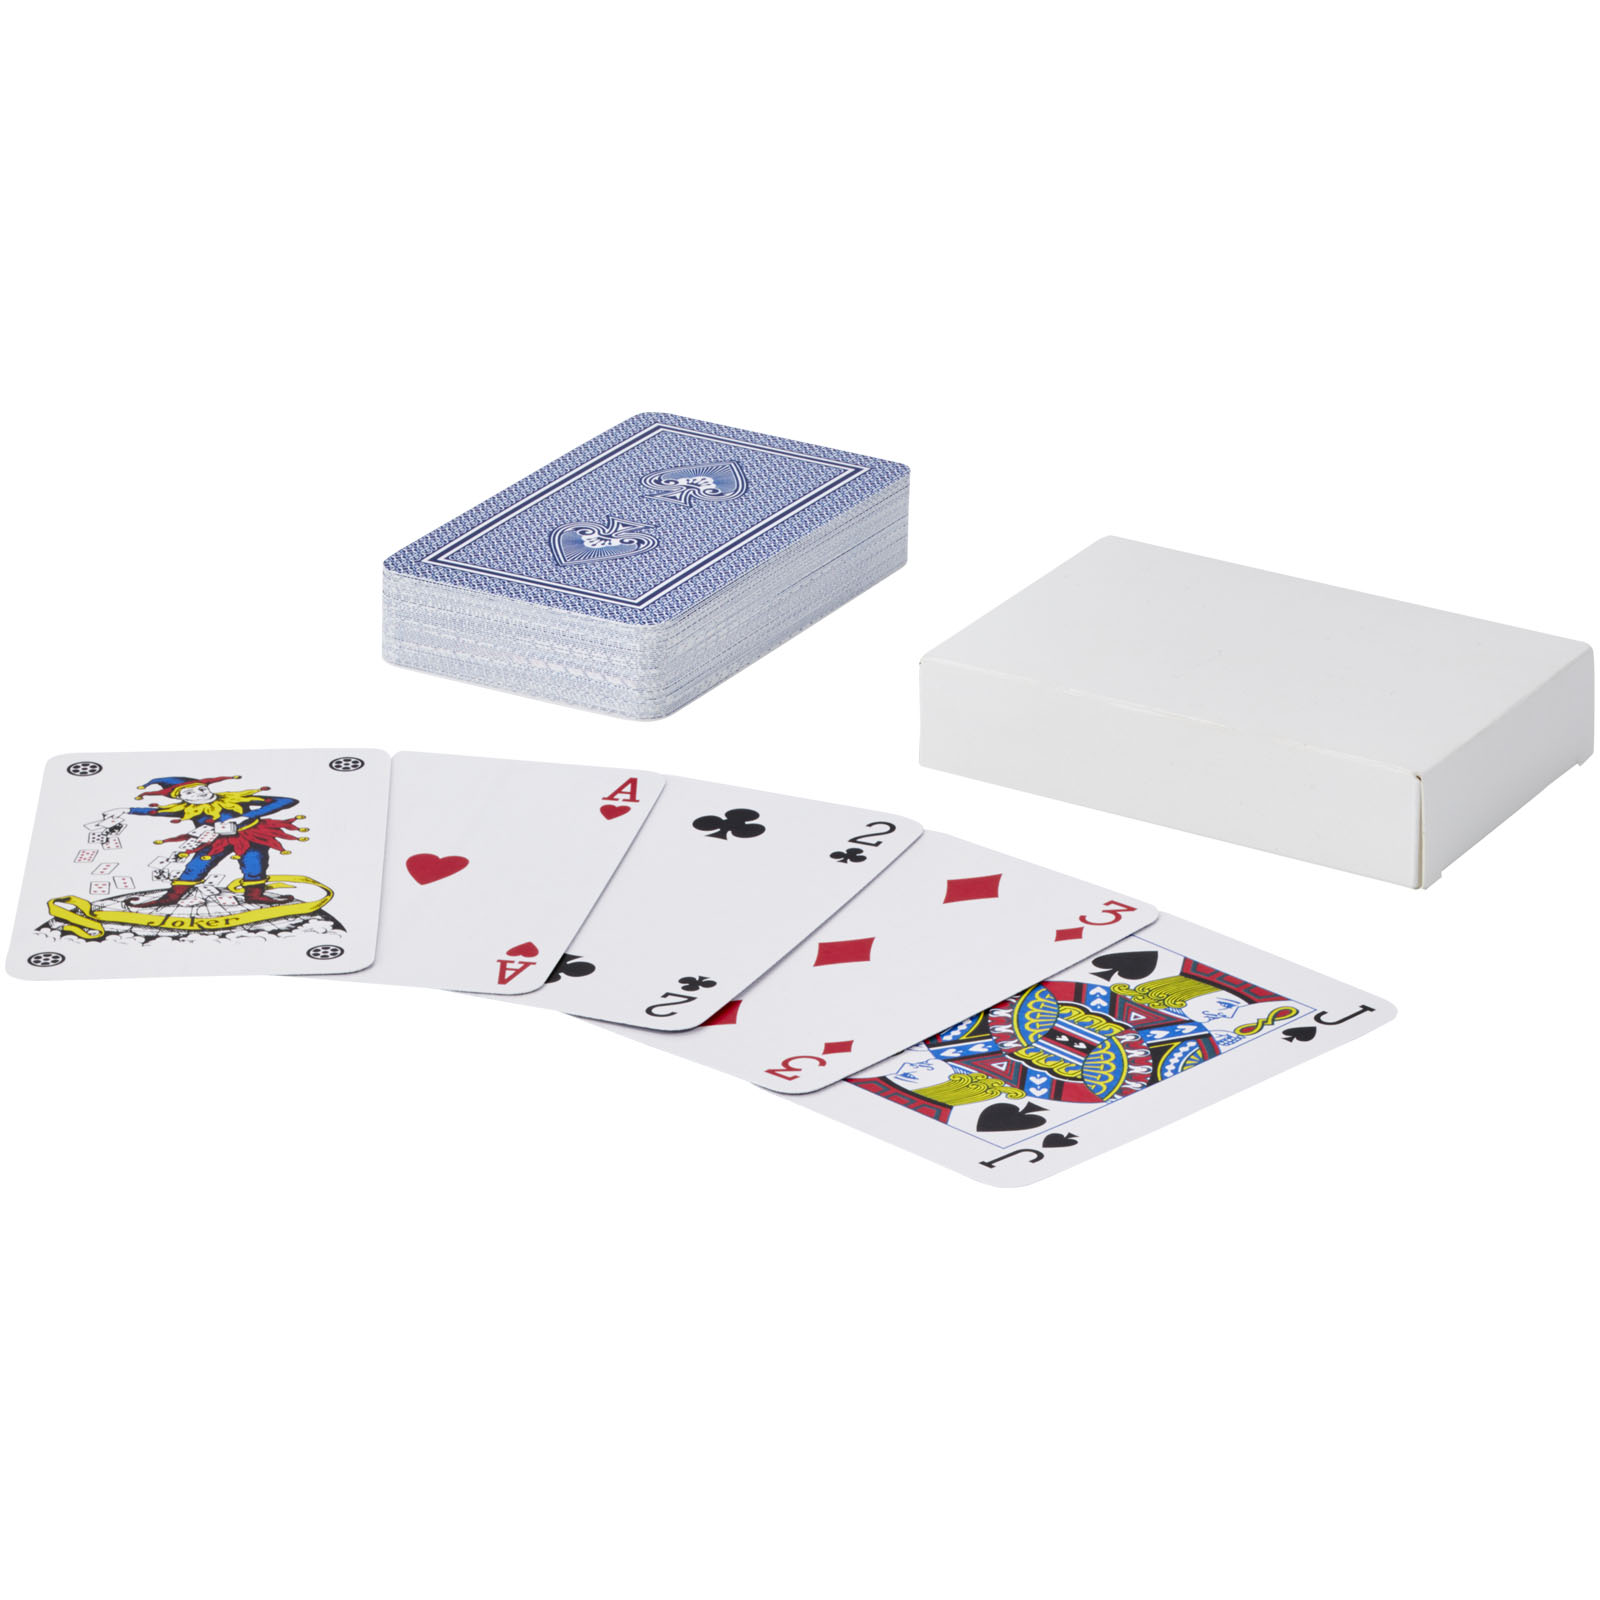 Jeux et jouets - Ensemble de cartes à jouer Ace